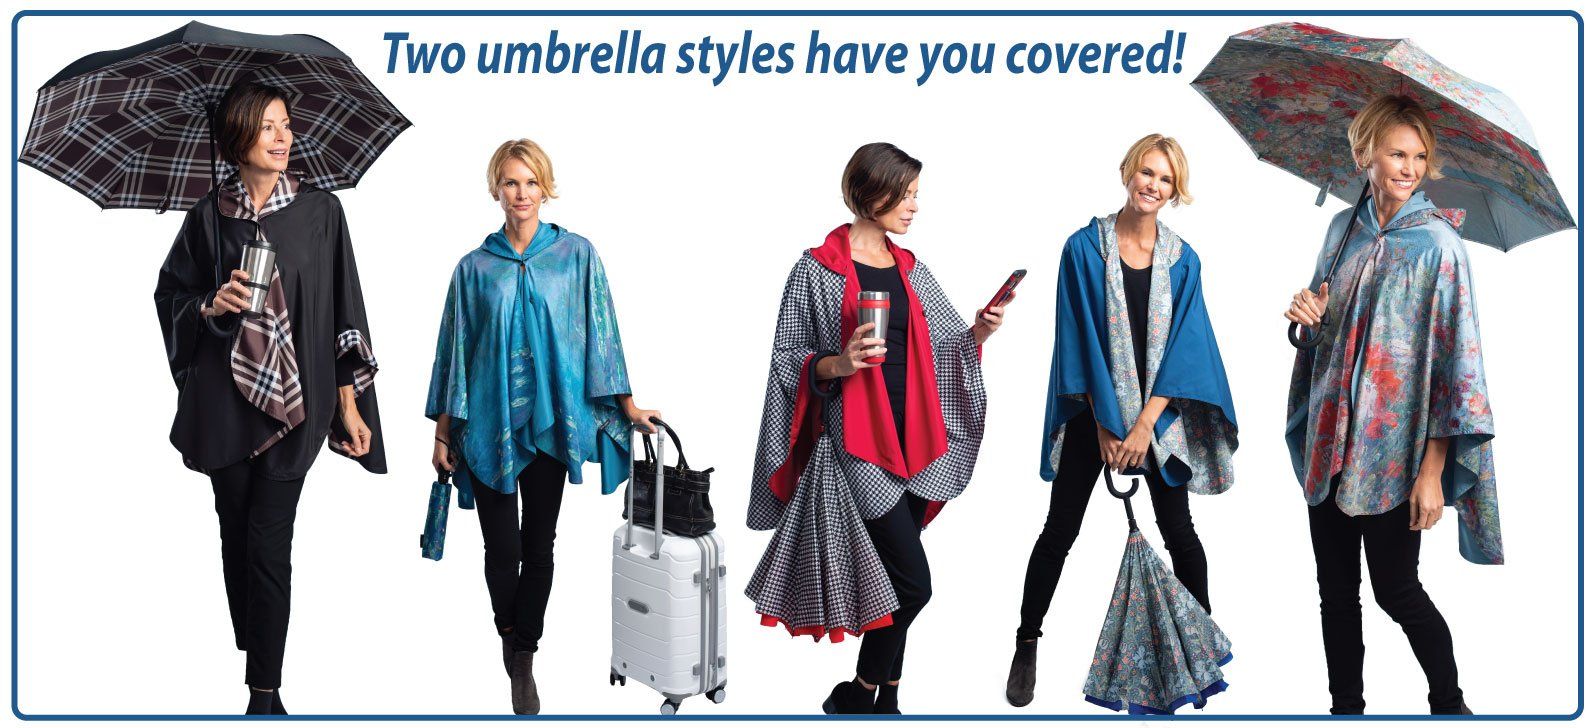 Buy Mini Travel Umbrella Compact Small Purse Umbrella for Women Sun Rain  Umbrellas Pink at Amazon.in